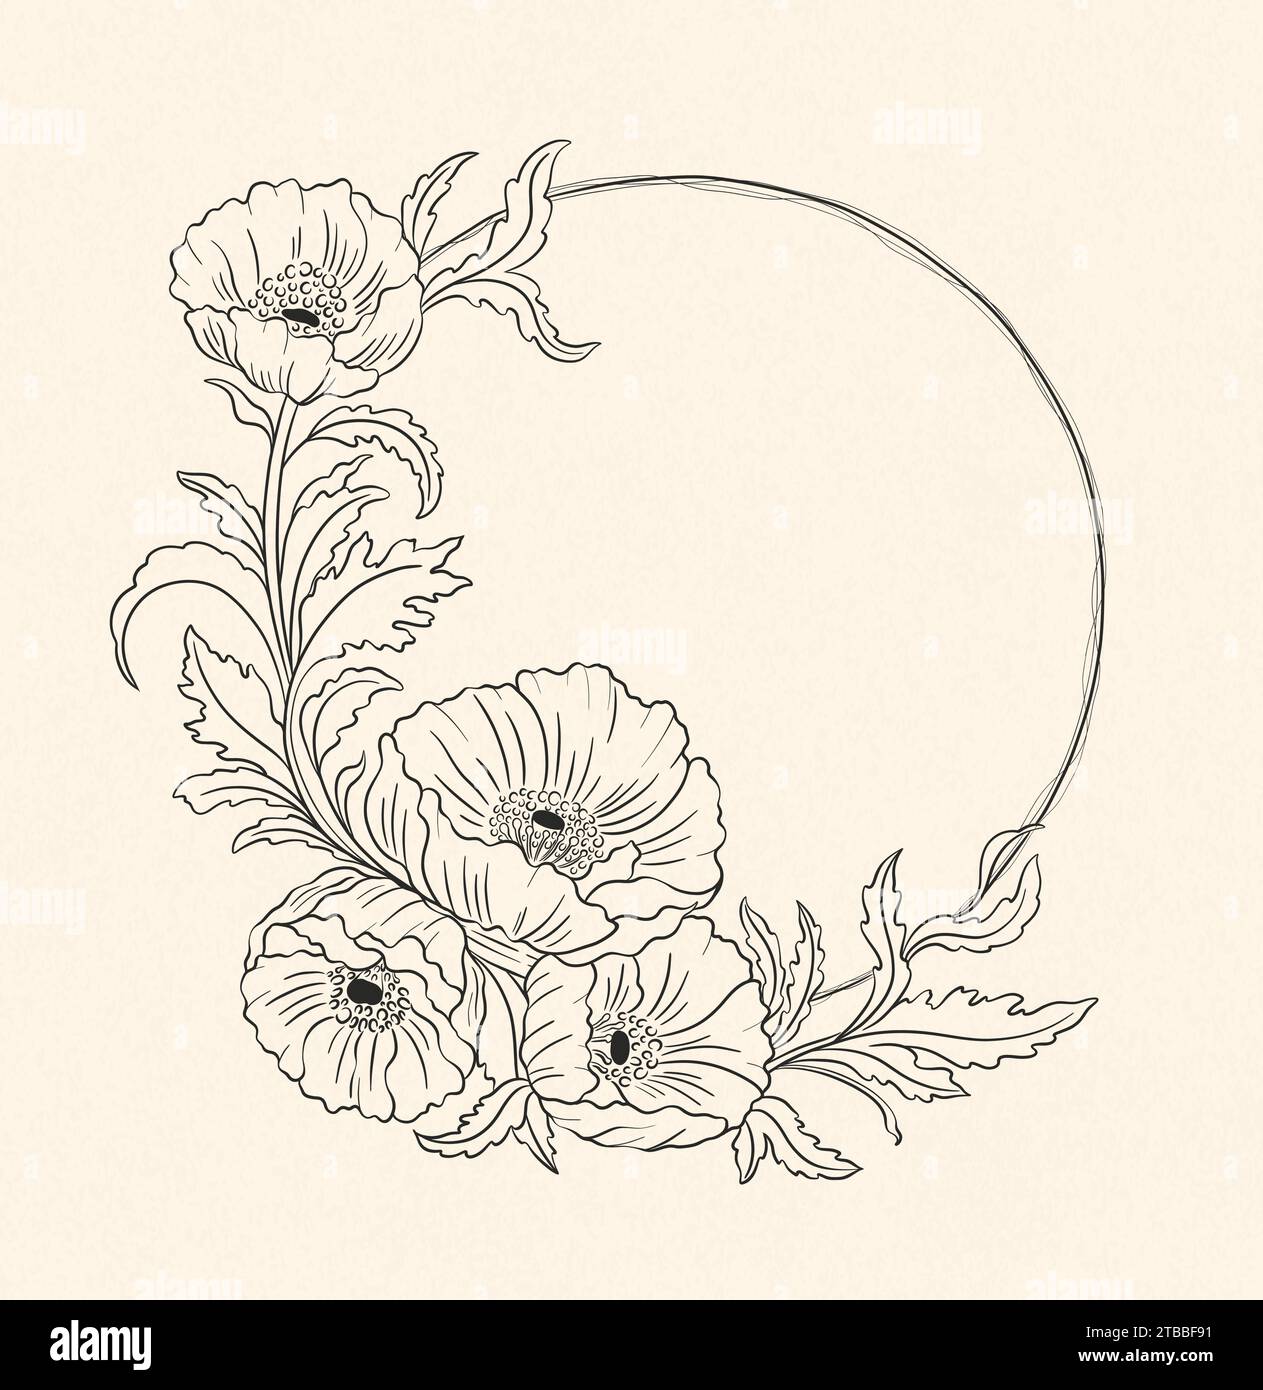 Pianta floreale di papavero in art nouveau 1920-1930. Disegnato a mano con trame di linee, foglie e fiori. Illustrazione Vettoriale